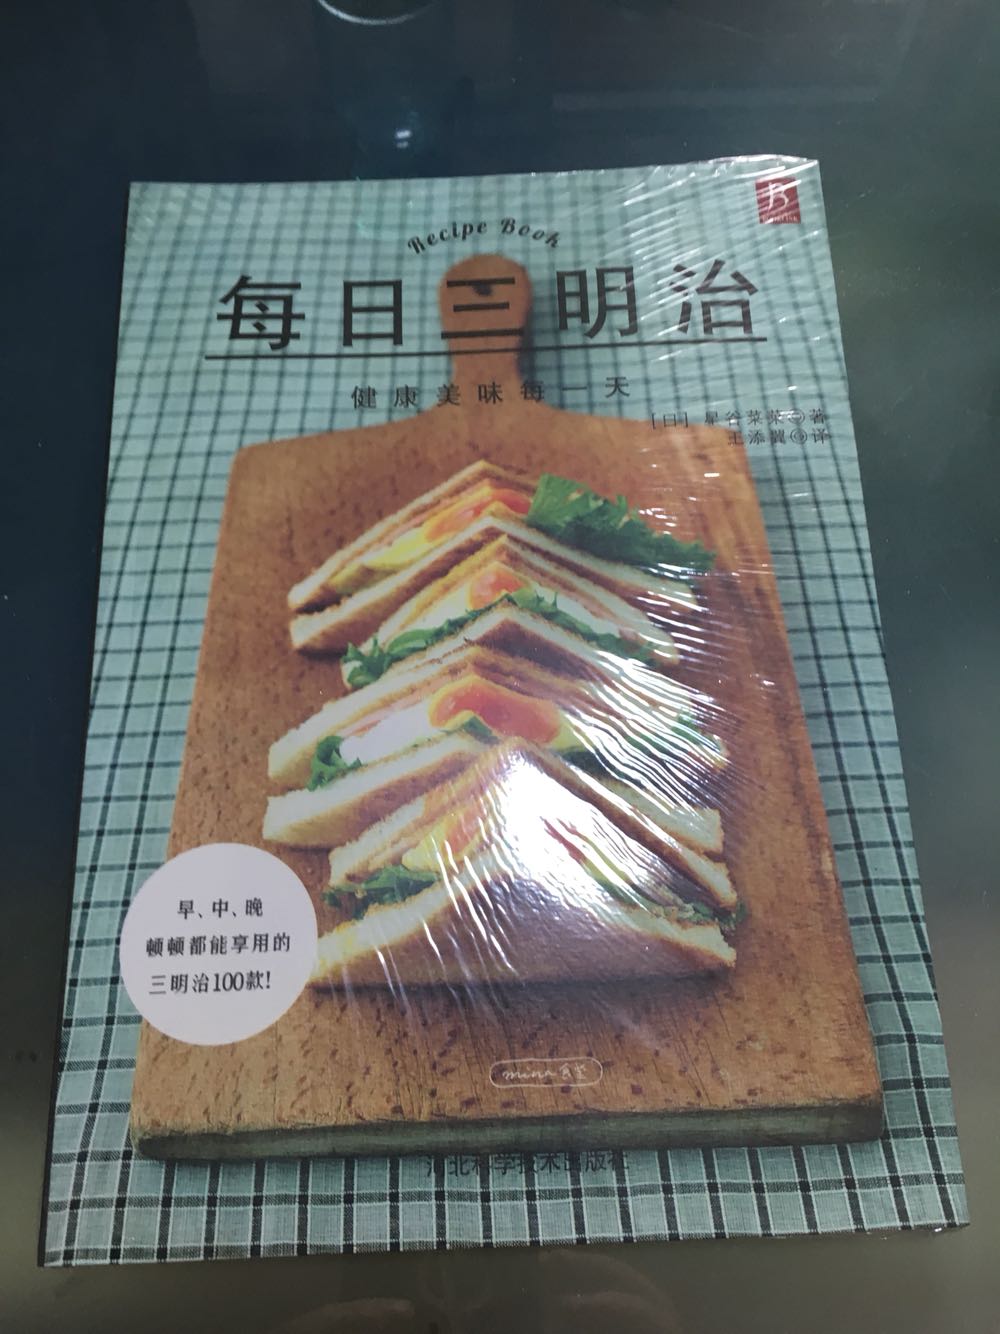 书好薄啊，这是我买过最薄的美食书籍。不过三明治写破天也就那些了，都挺简单的，易学。